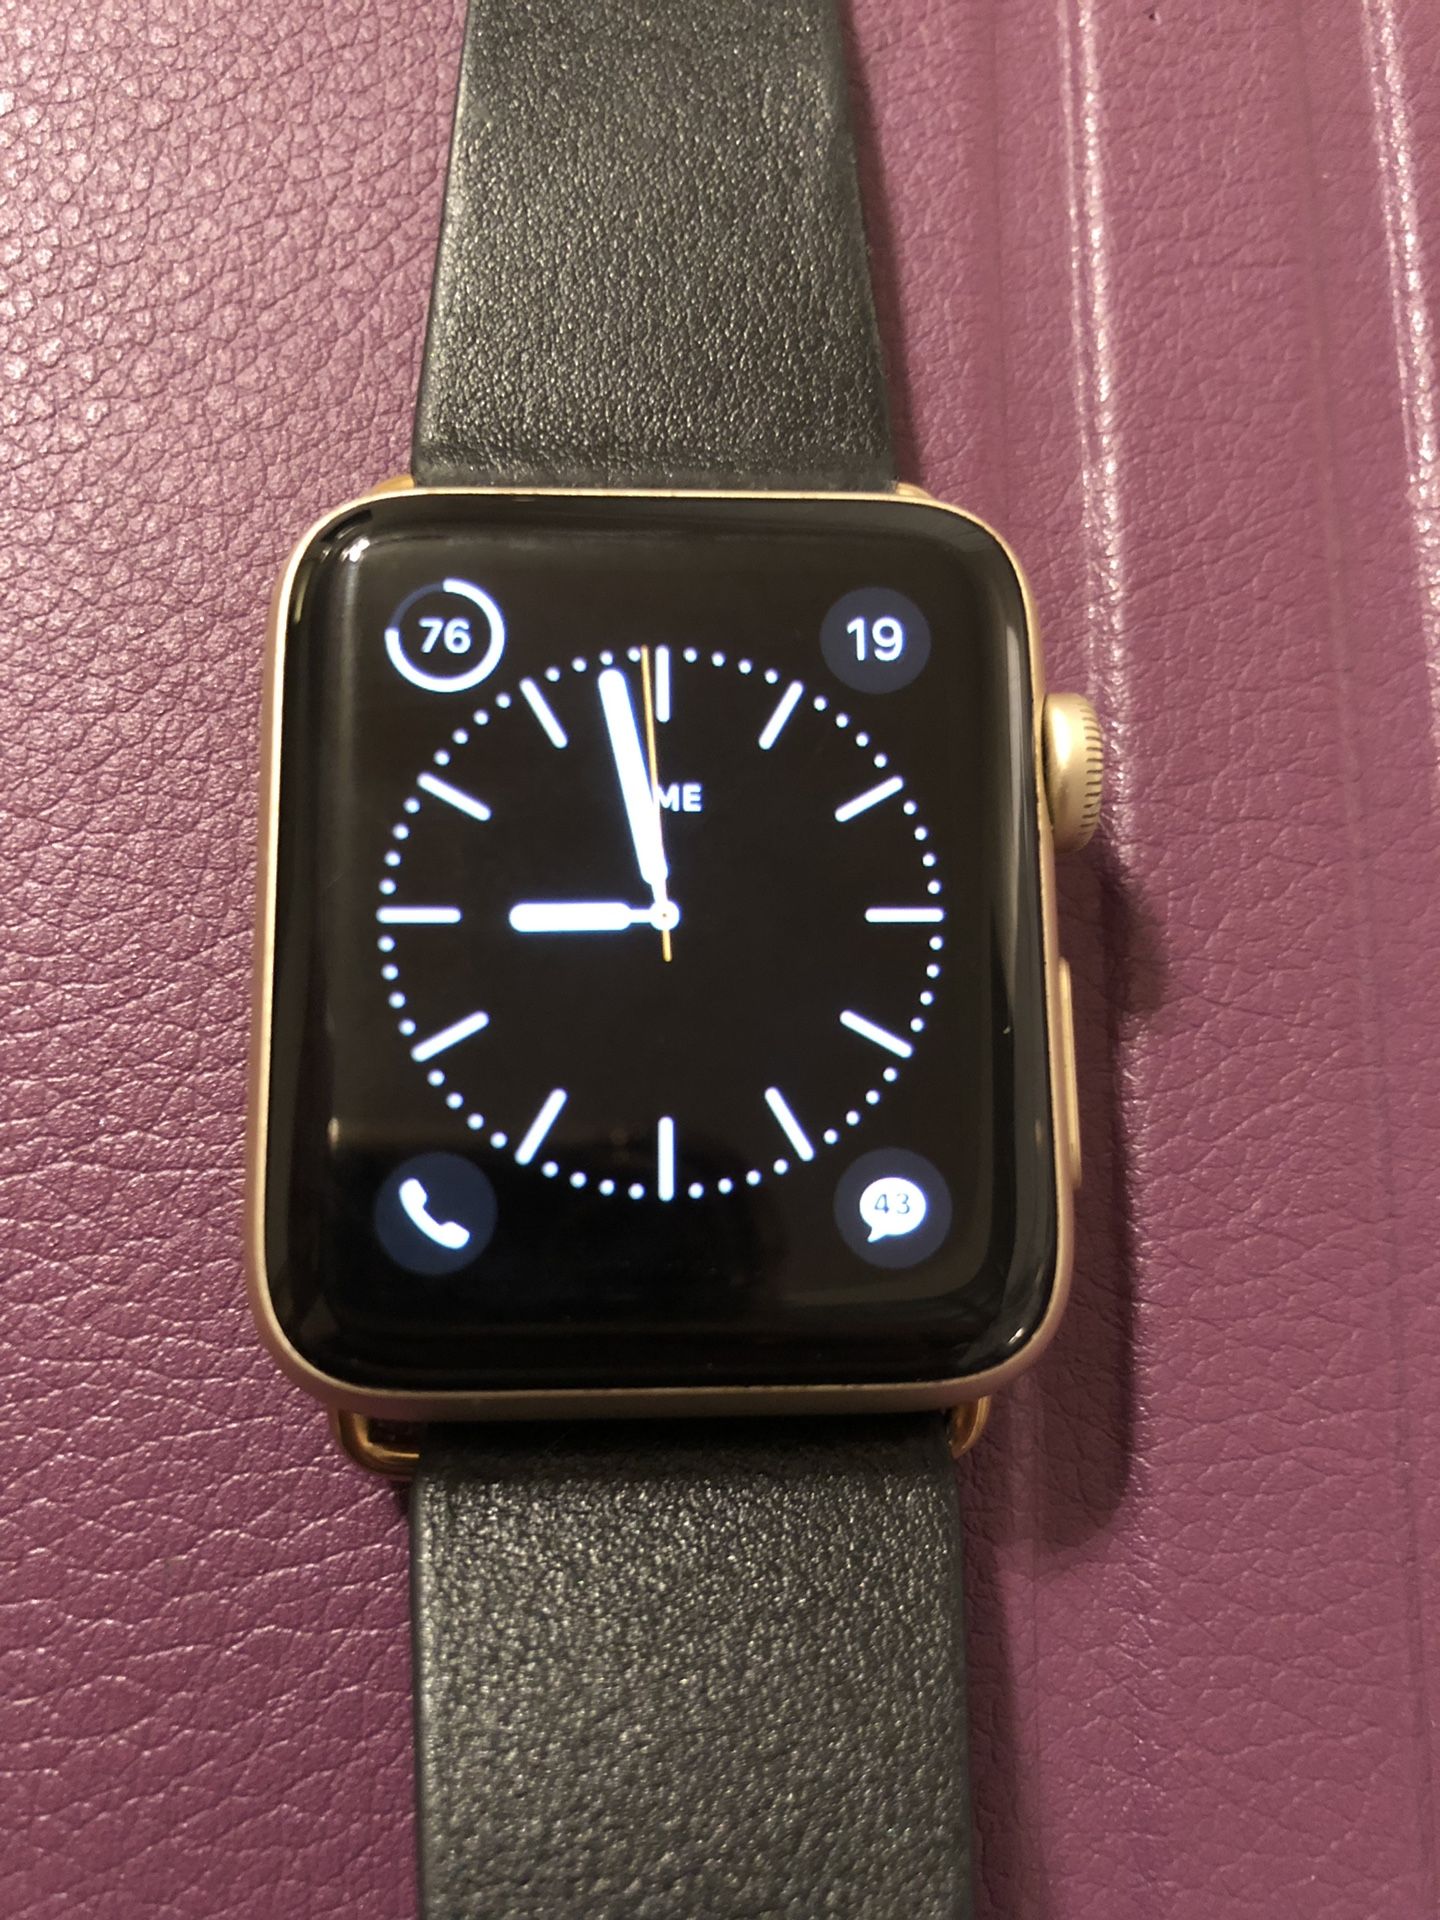 Apple Watch series 2 42mm gold aluminum